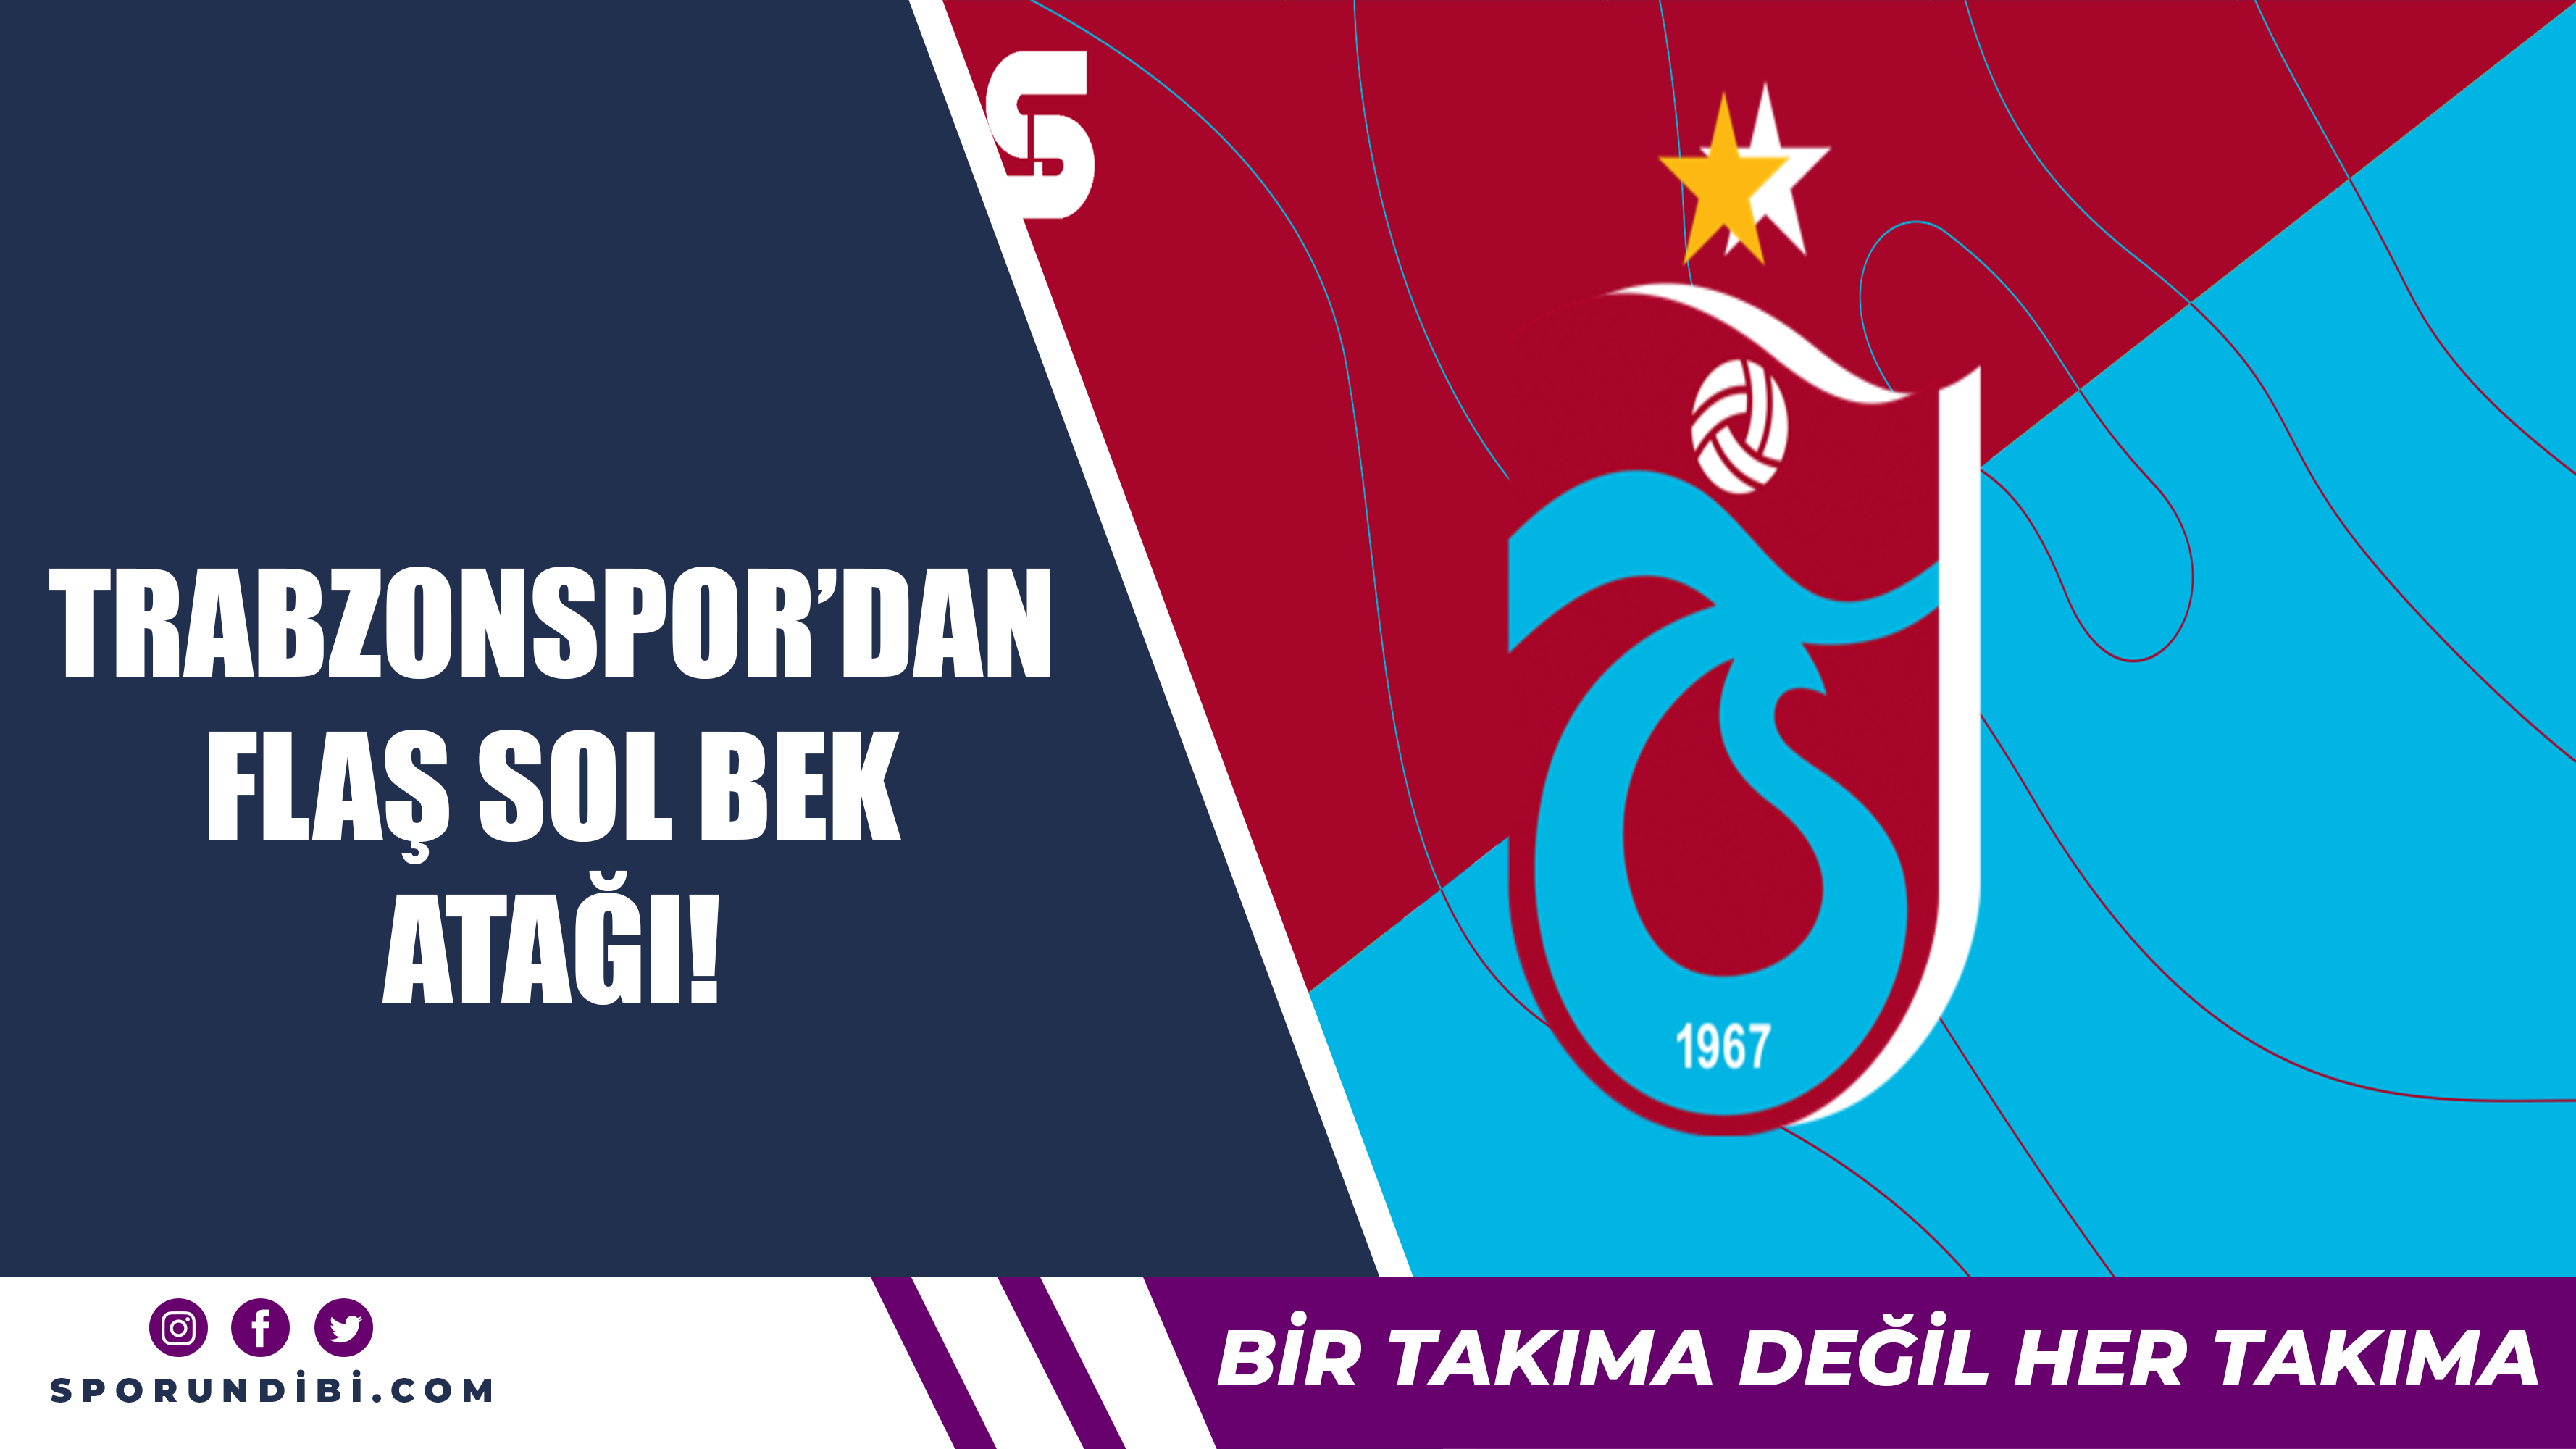 Trabzonspor'dan flaş sol bek atağı!